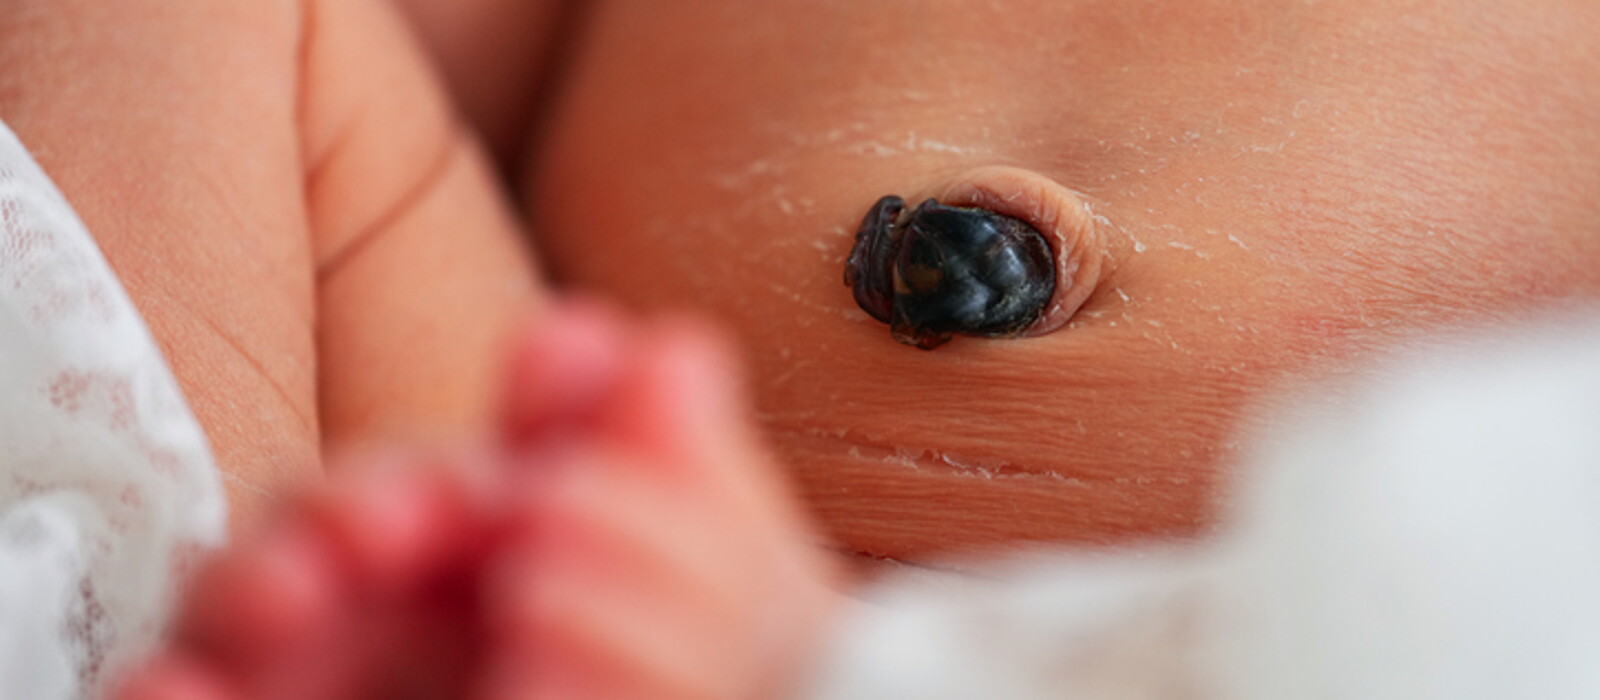 สายสะดือทารก สะดือใกล้หลุดเป็นแบบไหน พร้อมวิธีทำความสะอาด